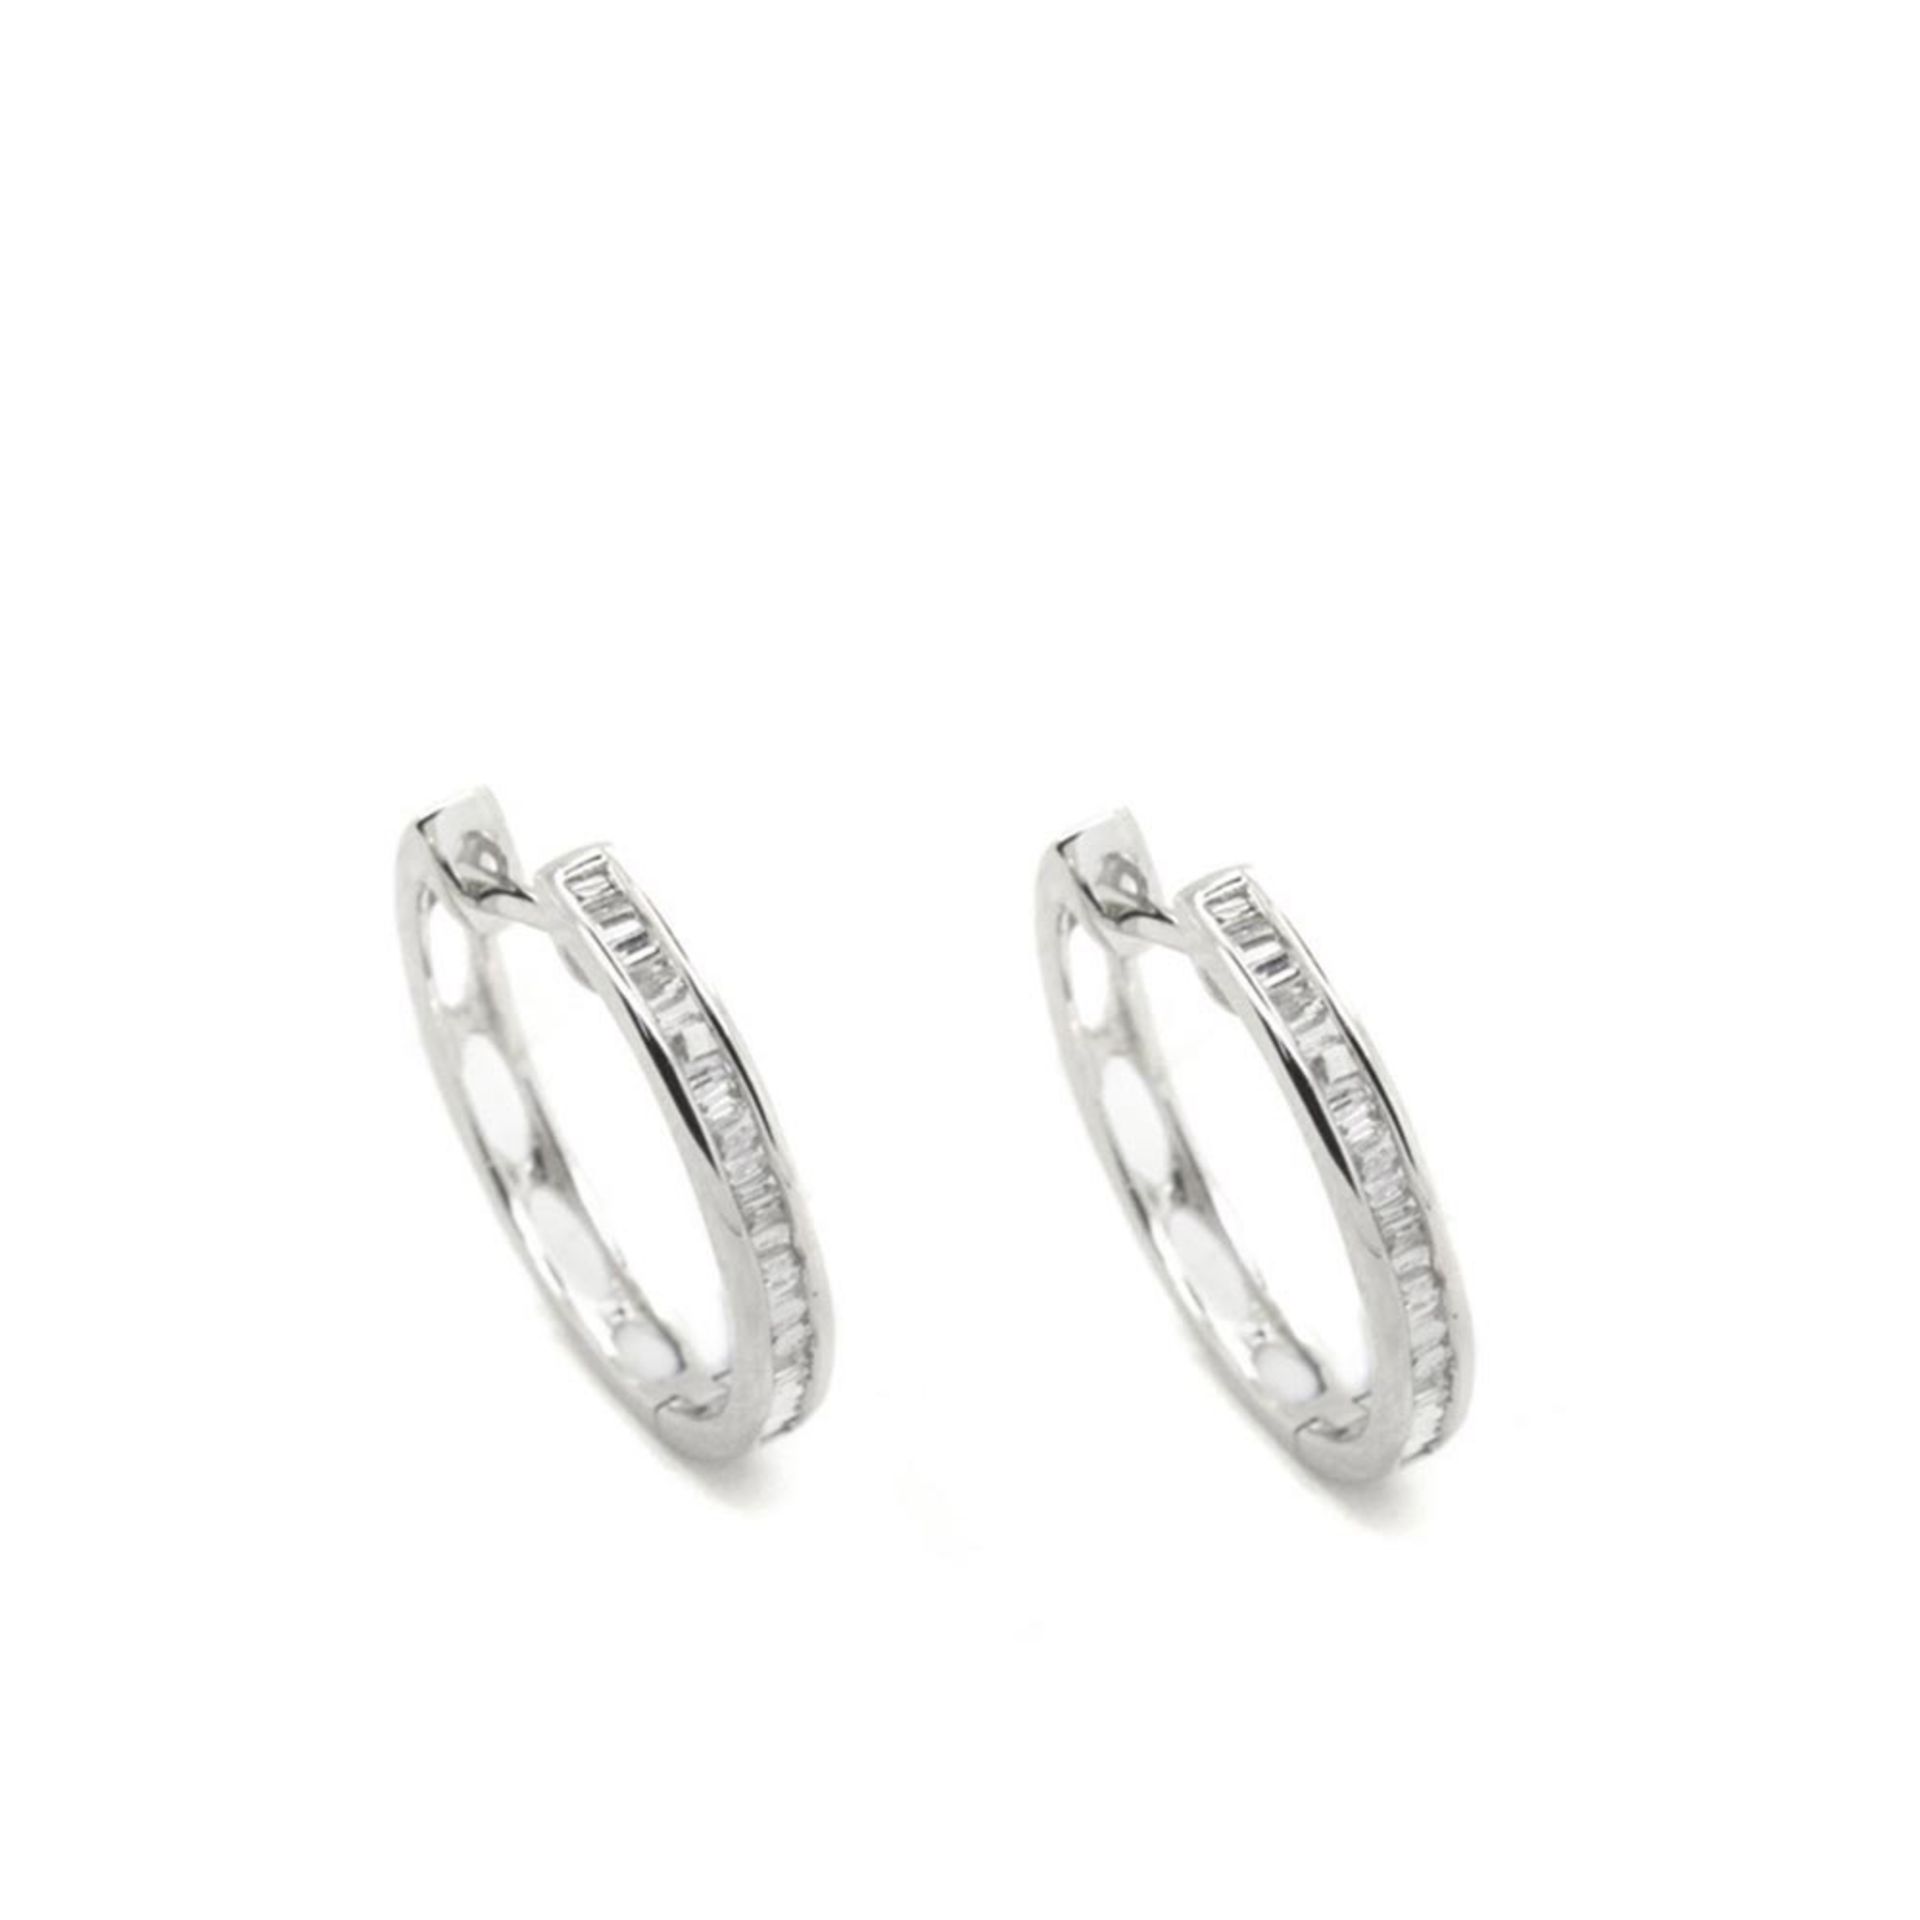 White gold and diamonds earrings Pendientes criolla en oro blanco con centro de diamantes talla